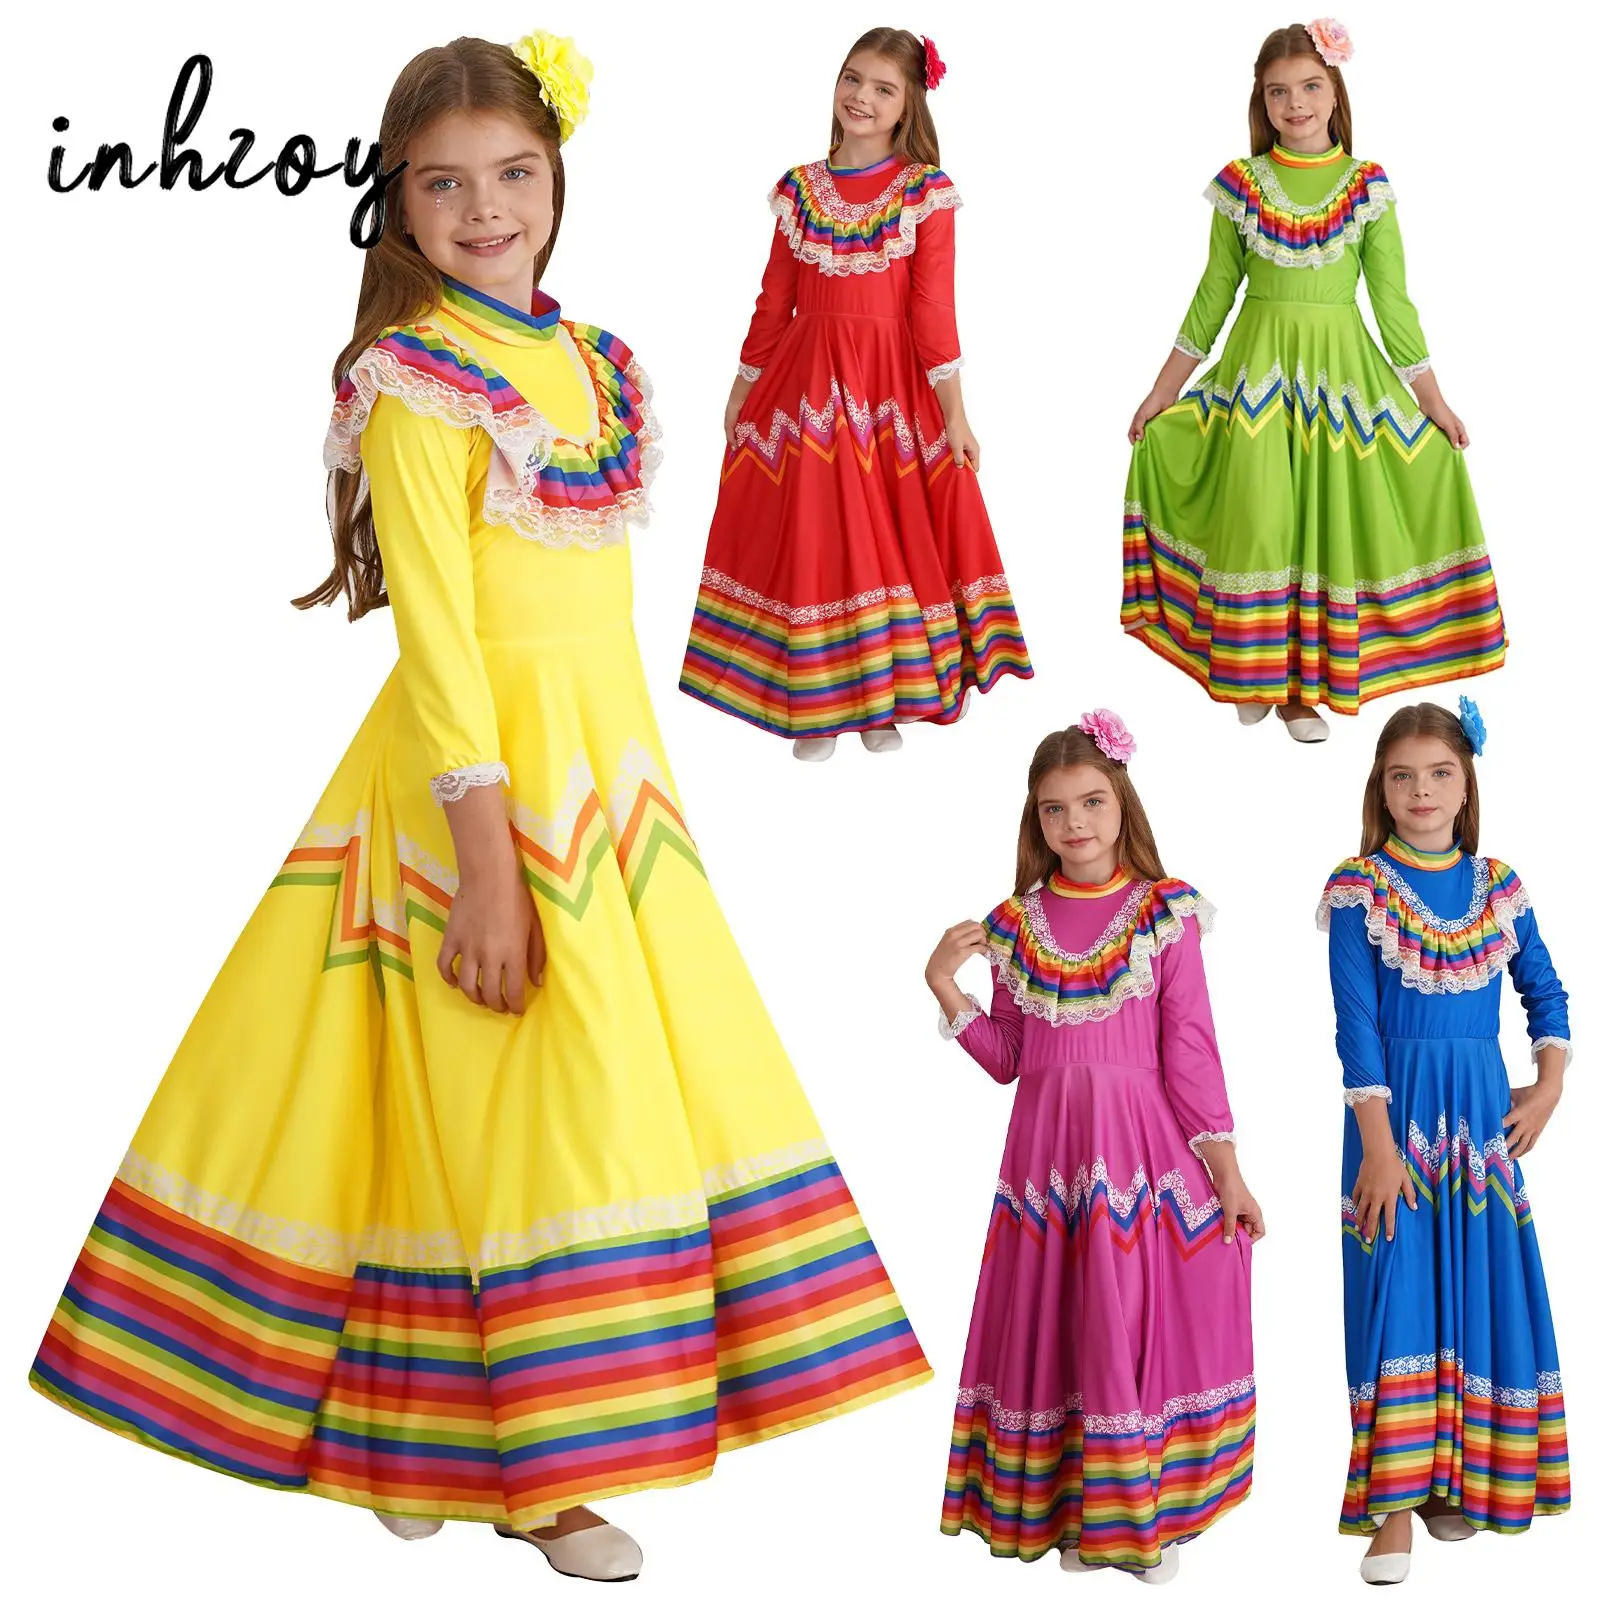 

Детский мексиканский костюм для девочек, традиционное платье народного танца Jalisco, фестиваль в национальном Мексиканском Стиле, карнавальное танцевальное платье